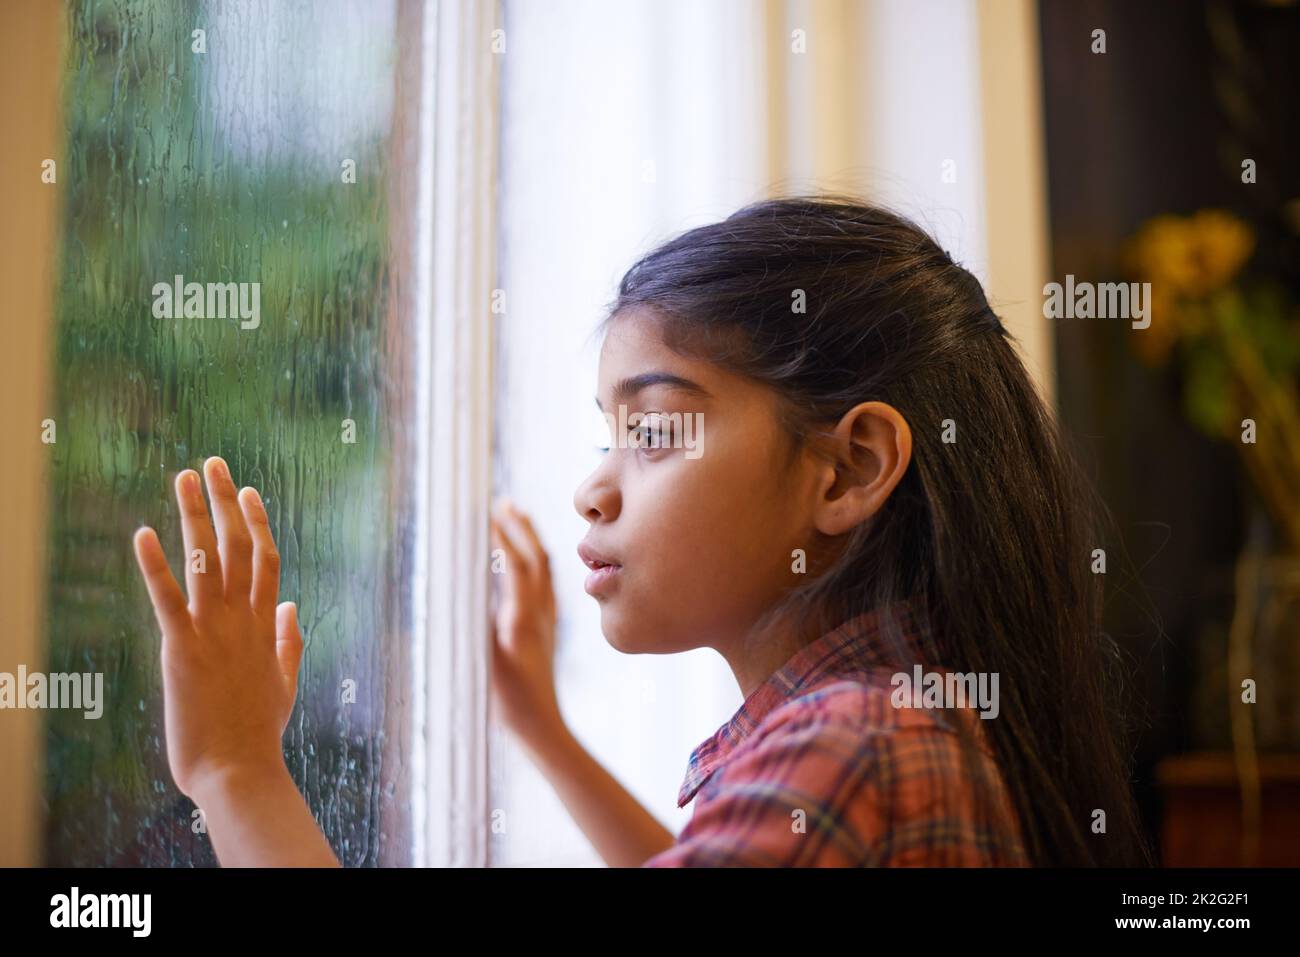 Ich hoffe, es hört auf zu regnen, damit ich nach draußen gehen und spielen kann. Aufnahme eines niedlichen kleinen Mädchens, das an einem regnerischen Tag aus dem Fenster schaut. Stockfoto